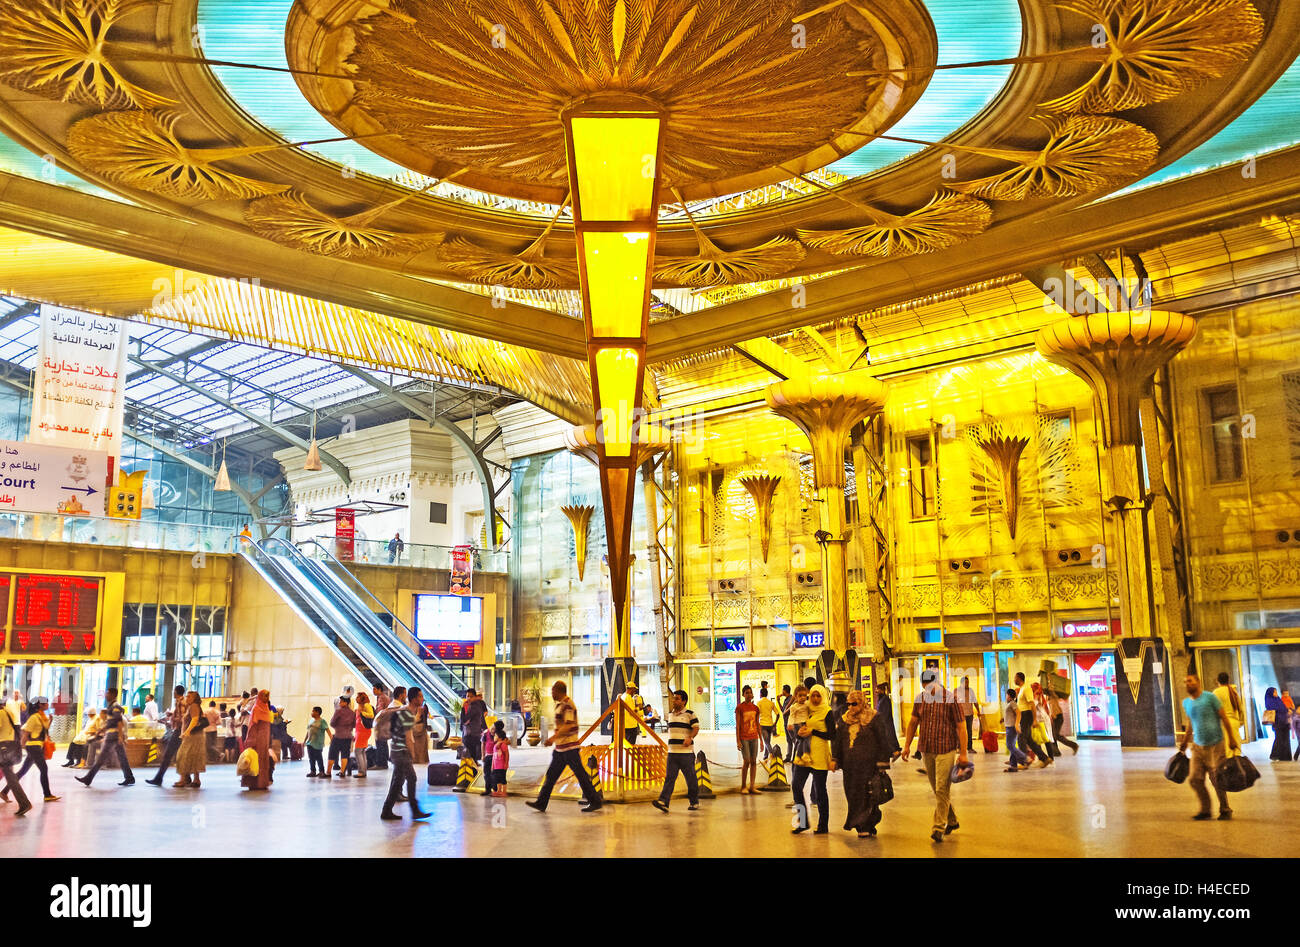 Das Innere des aktualisierten Ramses Bahnhof mit der umgekehrten Pyramide als des Kronleuchters, Kairo Ägypten Stockfoto